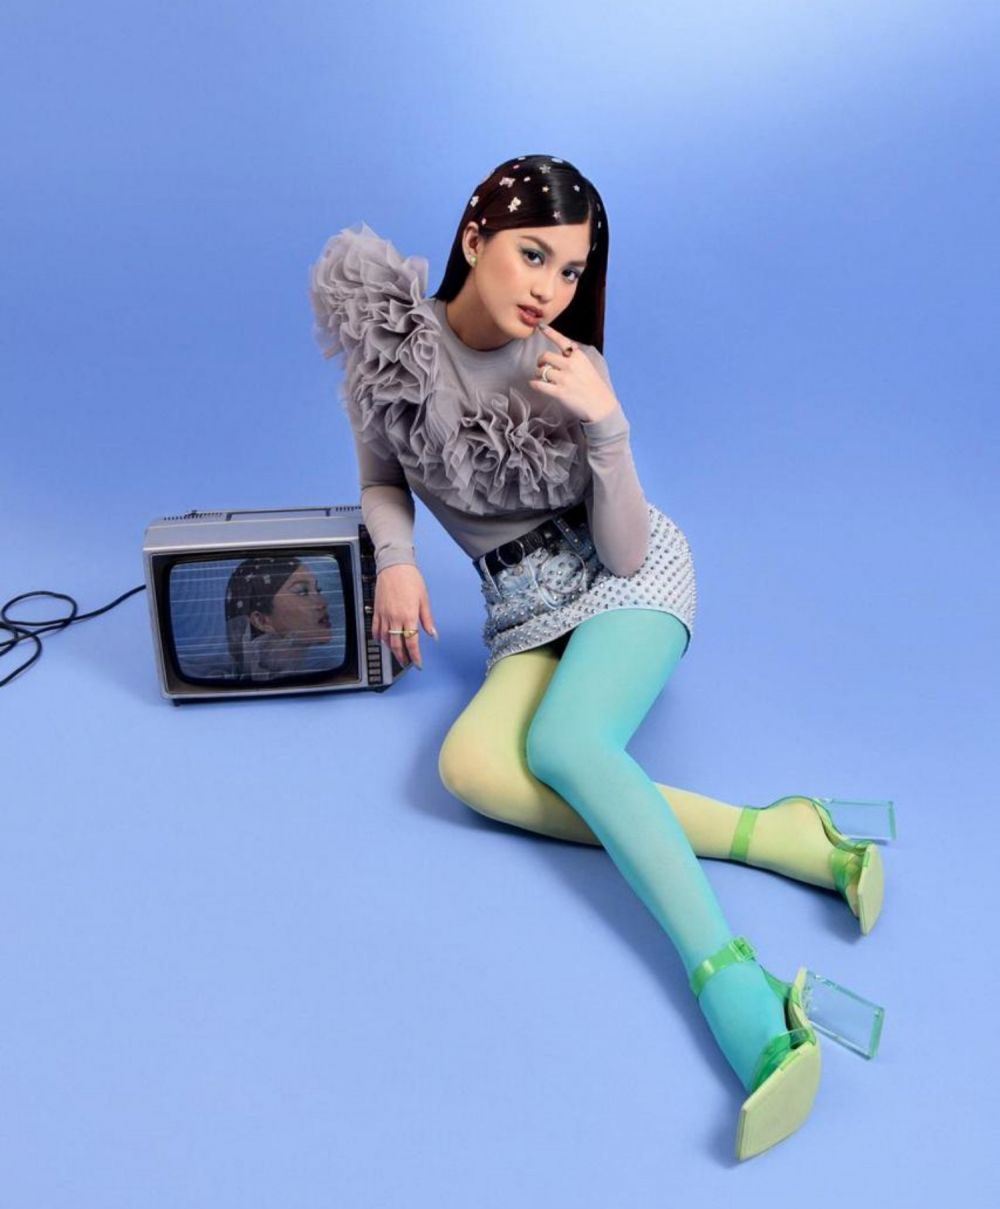 Nggak nyangka bisa berkarier di dunia musik, Andrea Tanzil rilis single debut Uneasy